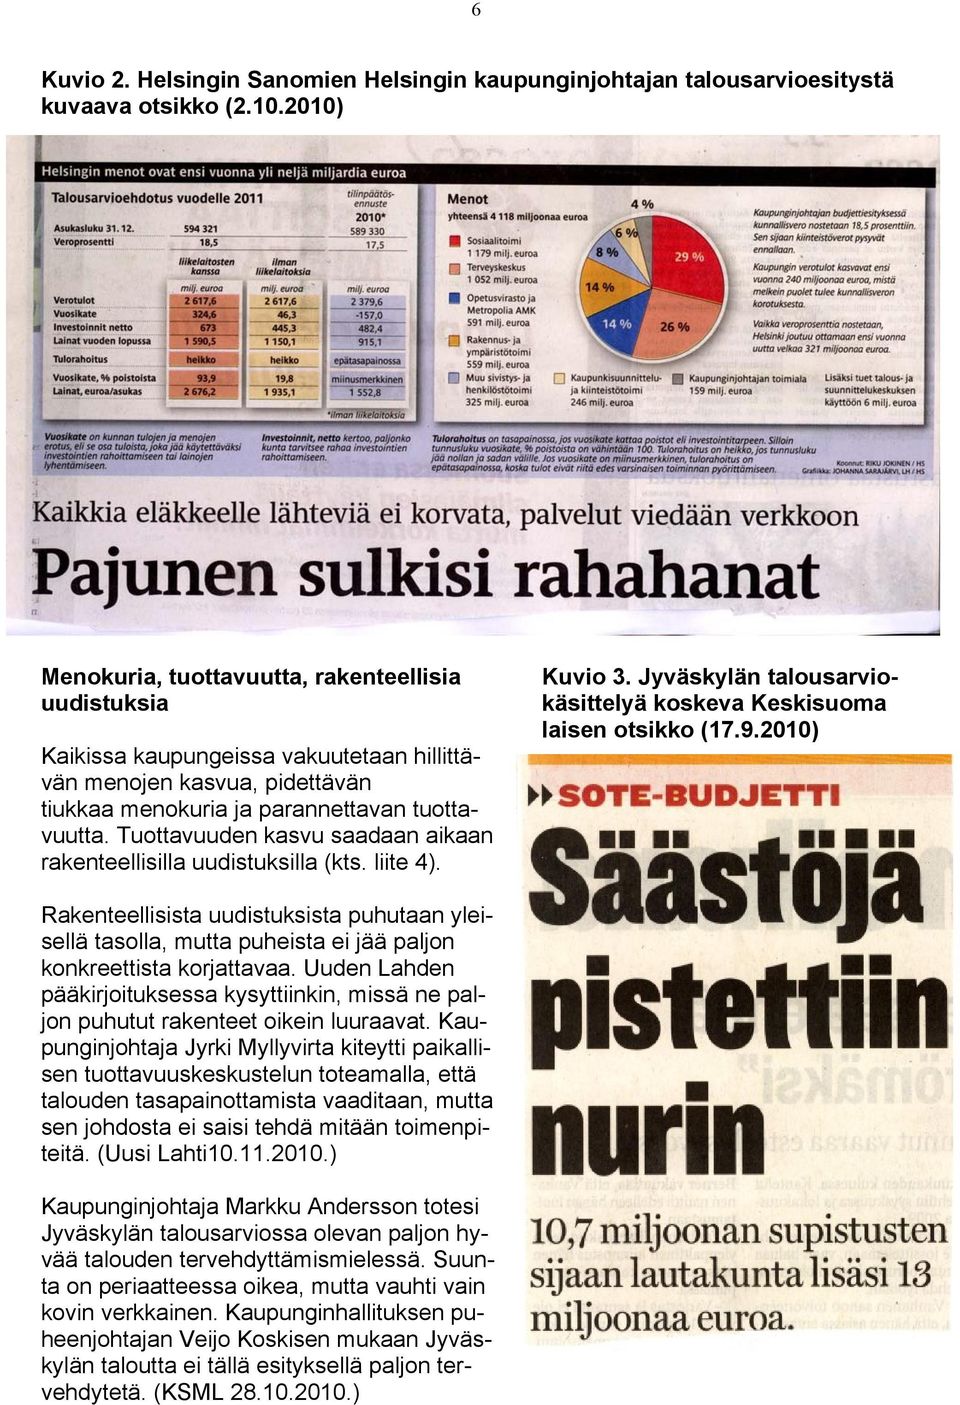 Tuottavuuden kasvu saadaan aikaan rakenteellisilla uudistuksilla (kts. liite 4). Kuvio 3. Jyväskylän talousarviokäsittelyä koskeva Keskisuoma laisen otsikko (17.9.